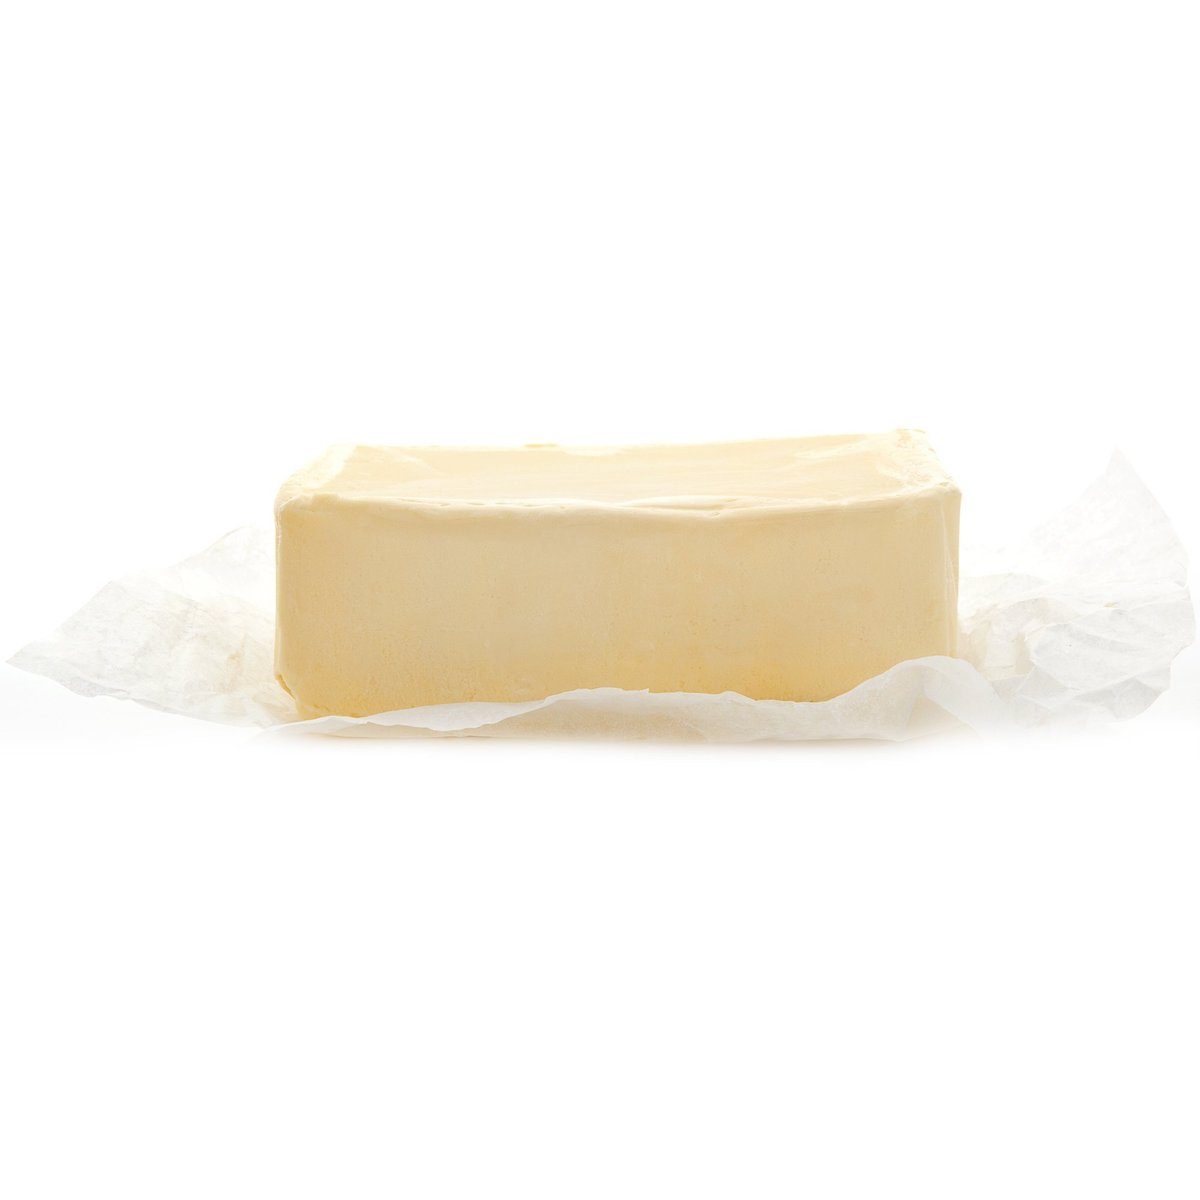 Gran Moravia Čerstvé máslo, ručně krájené